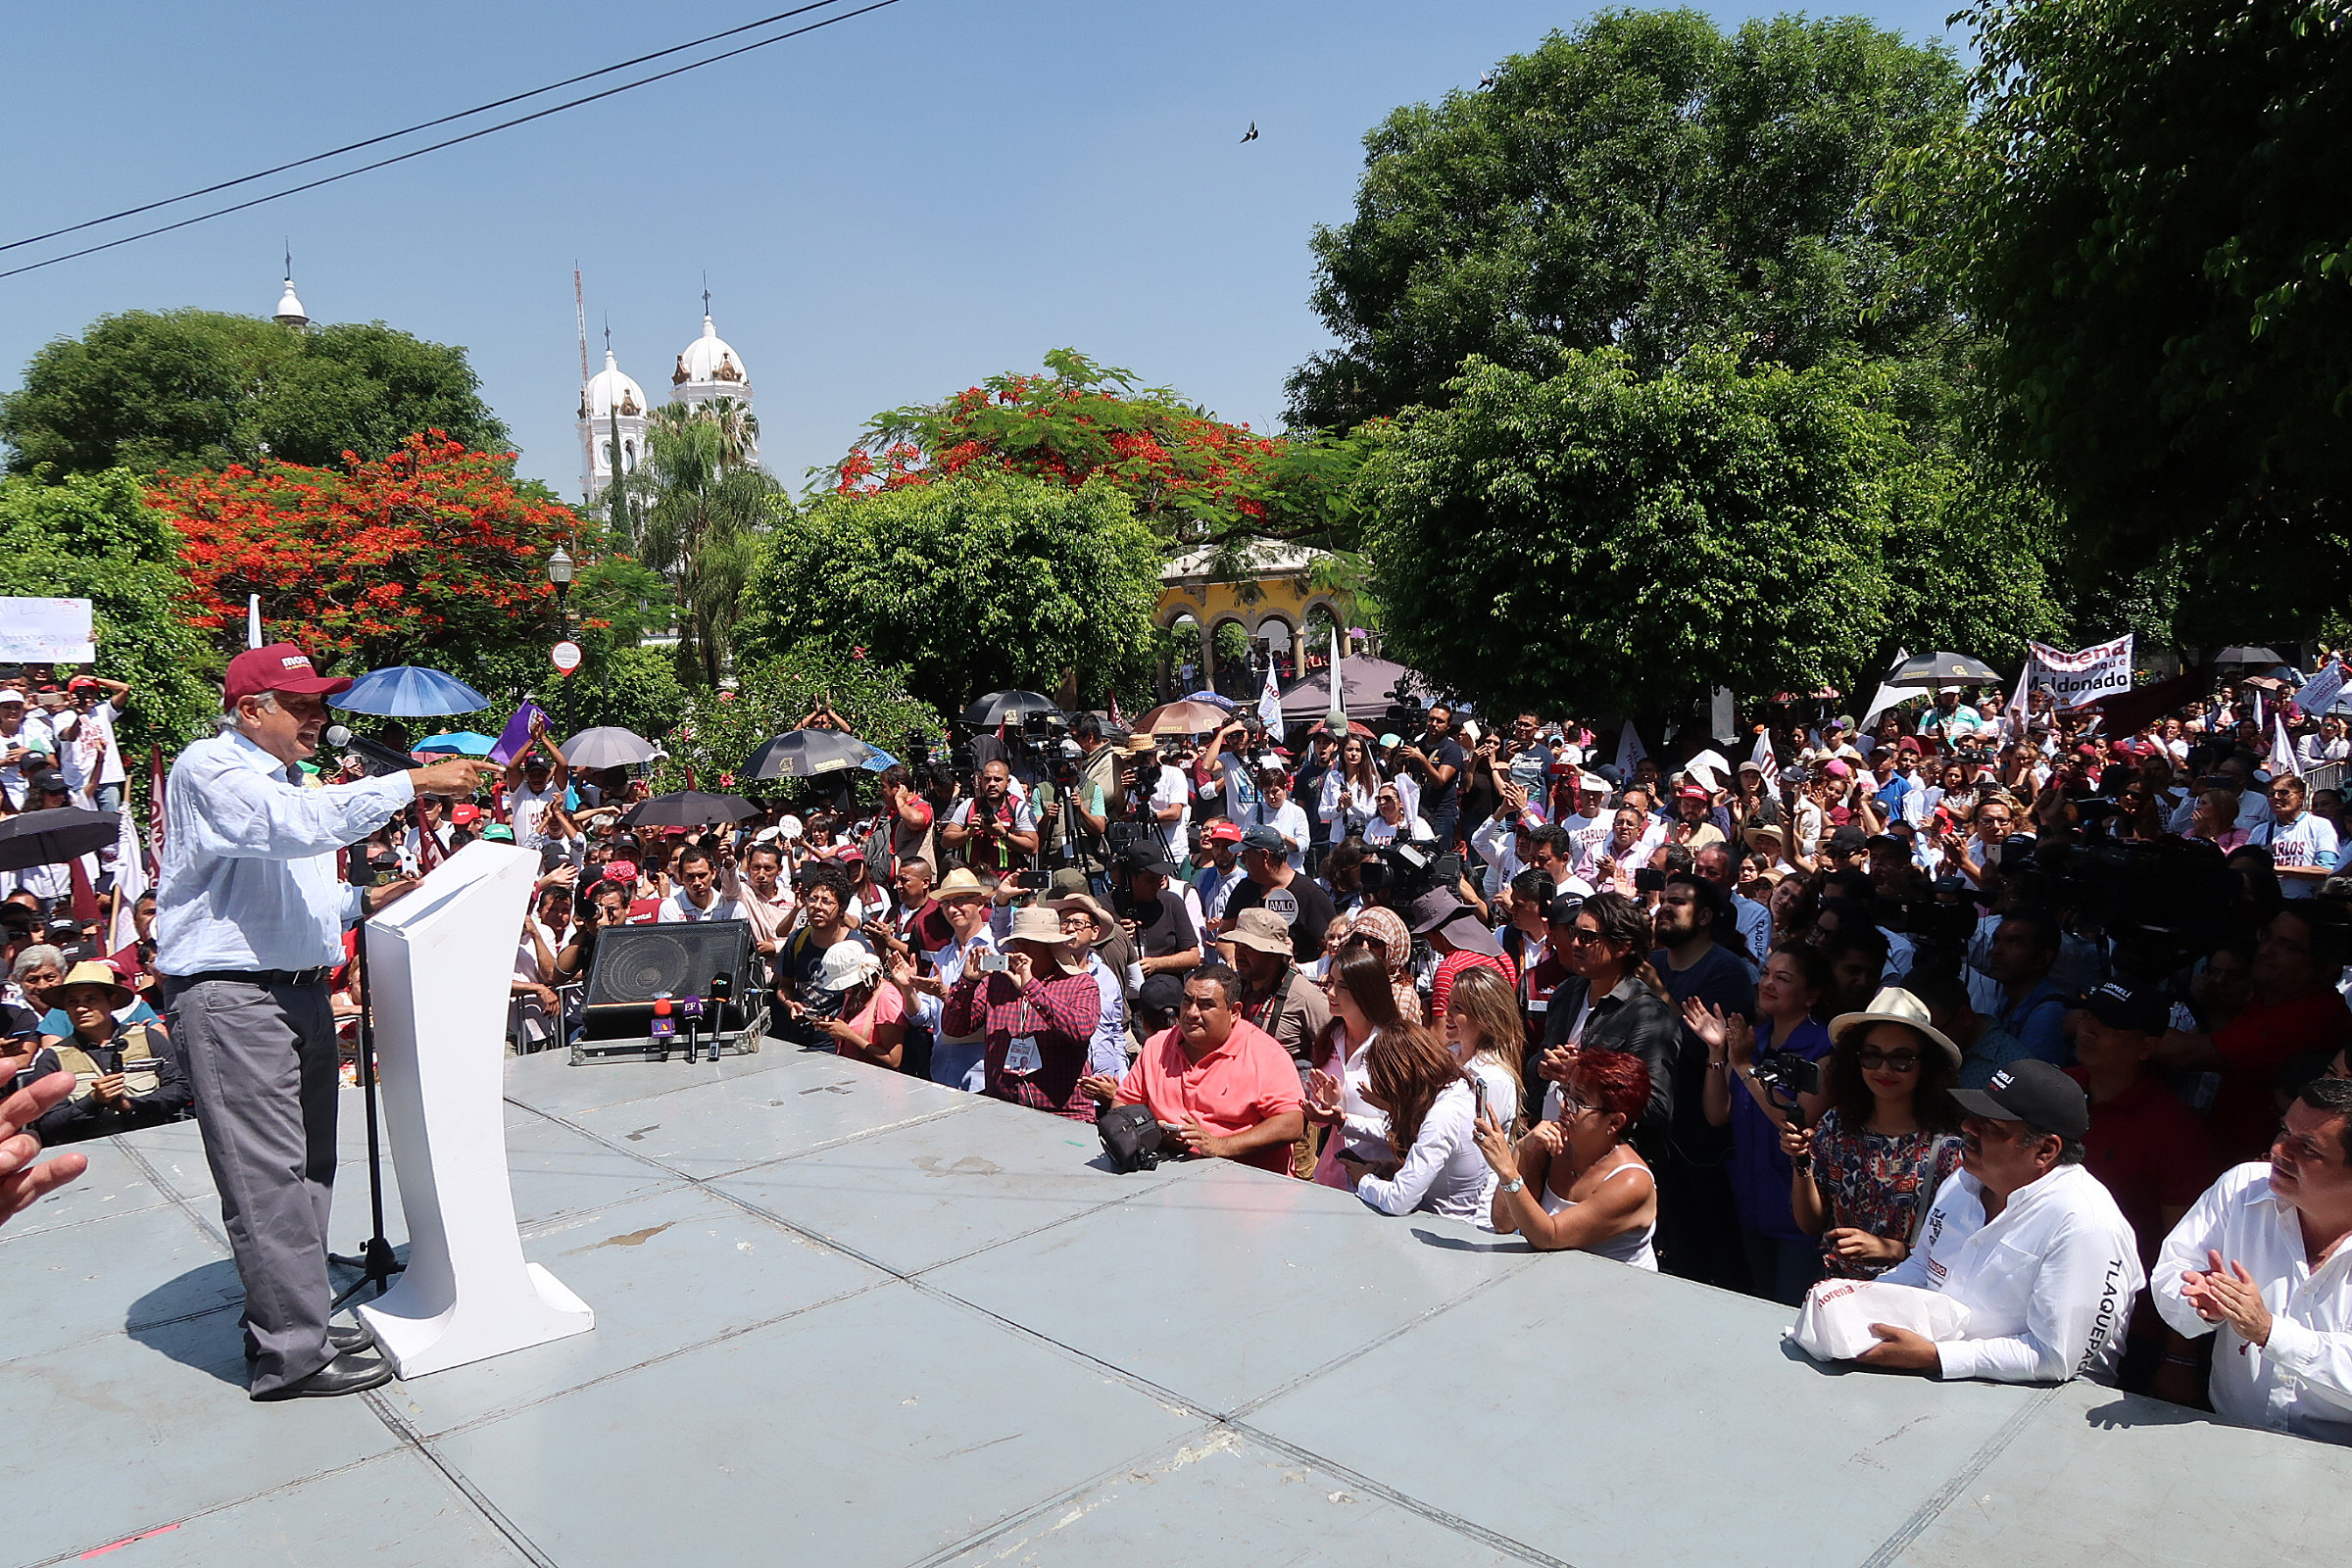 El caso de Ayotzinapa será un ejemplo de que en el nuevo Gobierno habrá justicia”, dijo el aspirante a la presidencia de México.